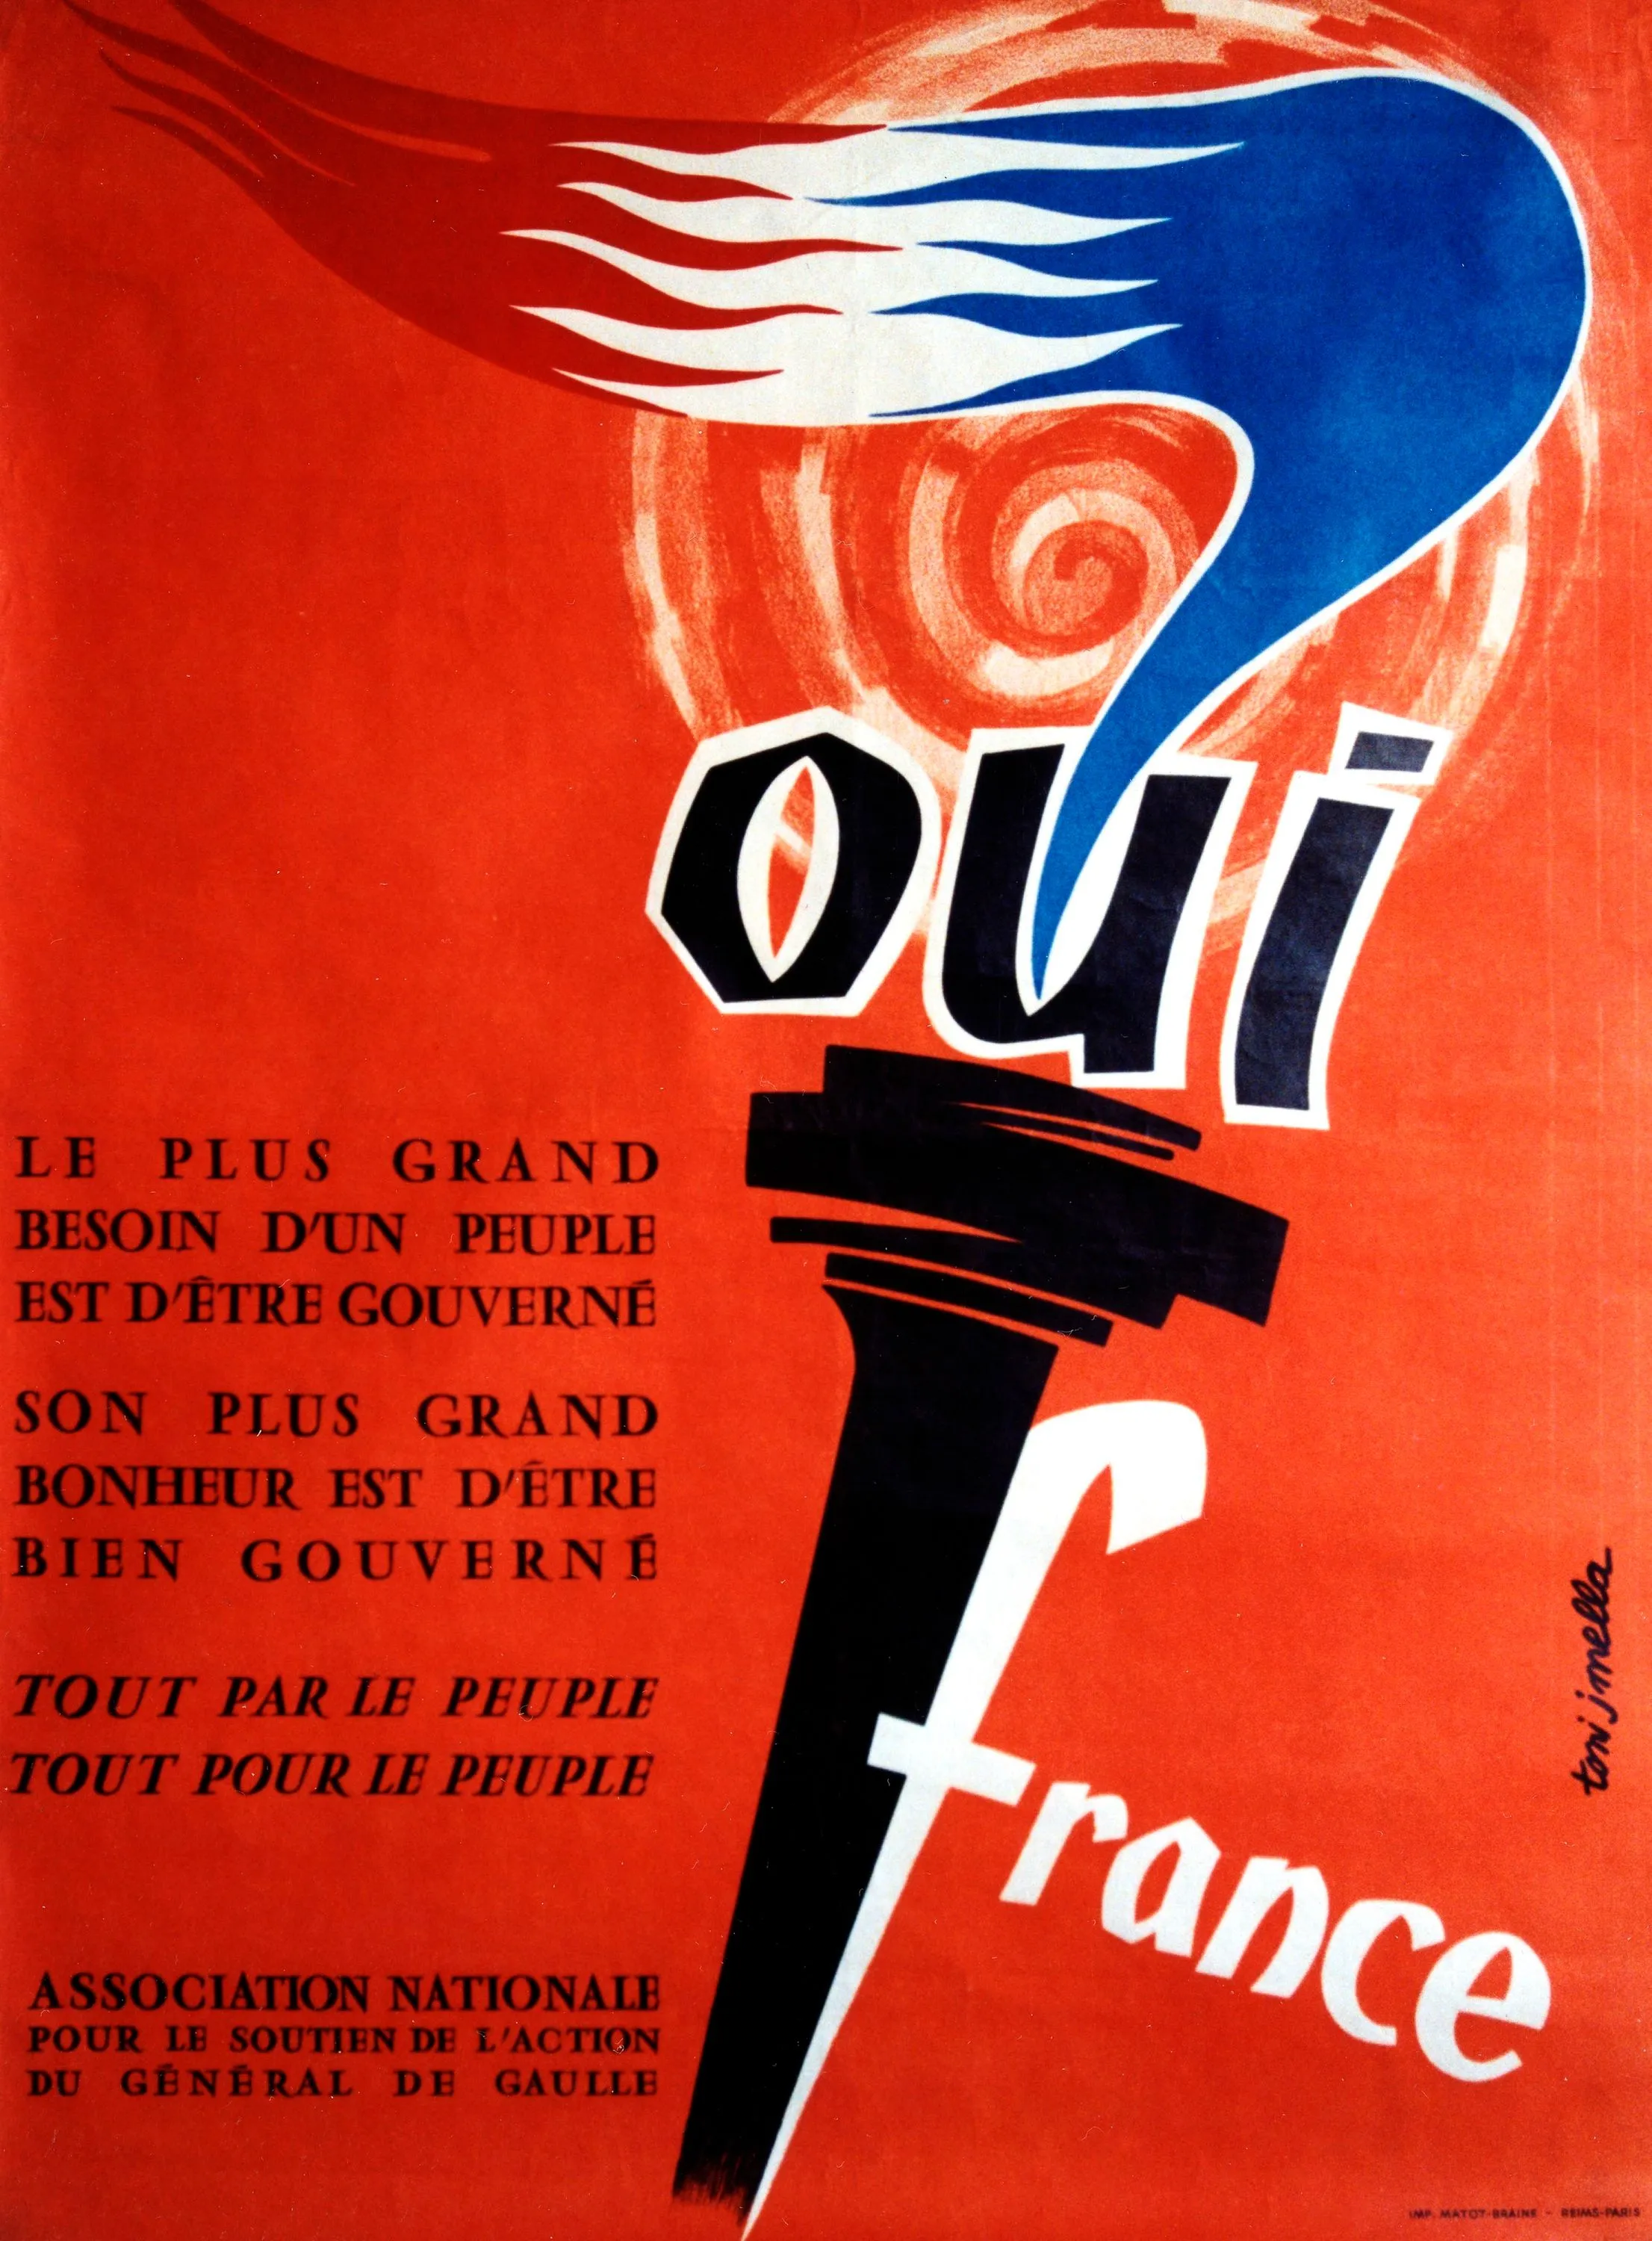 Affiche de l'Association nationale pour le soutien de l'action du général de Gaulle, 1958